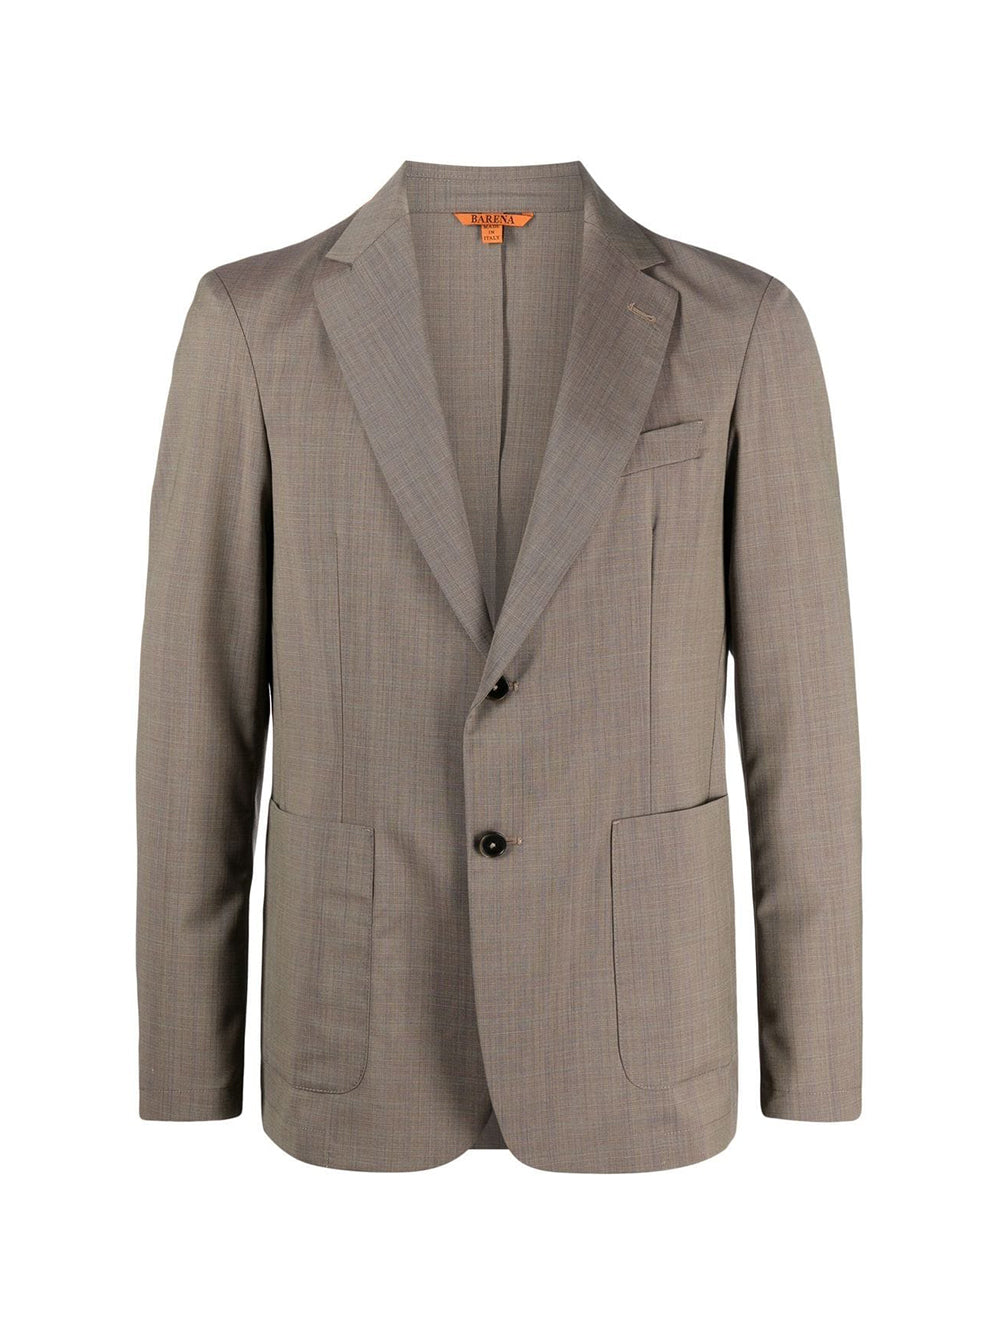 Borgo Triola jacket